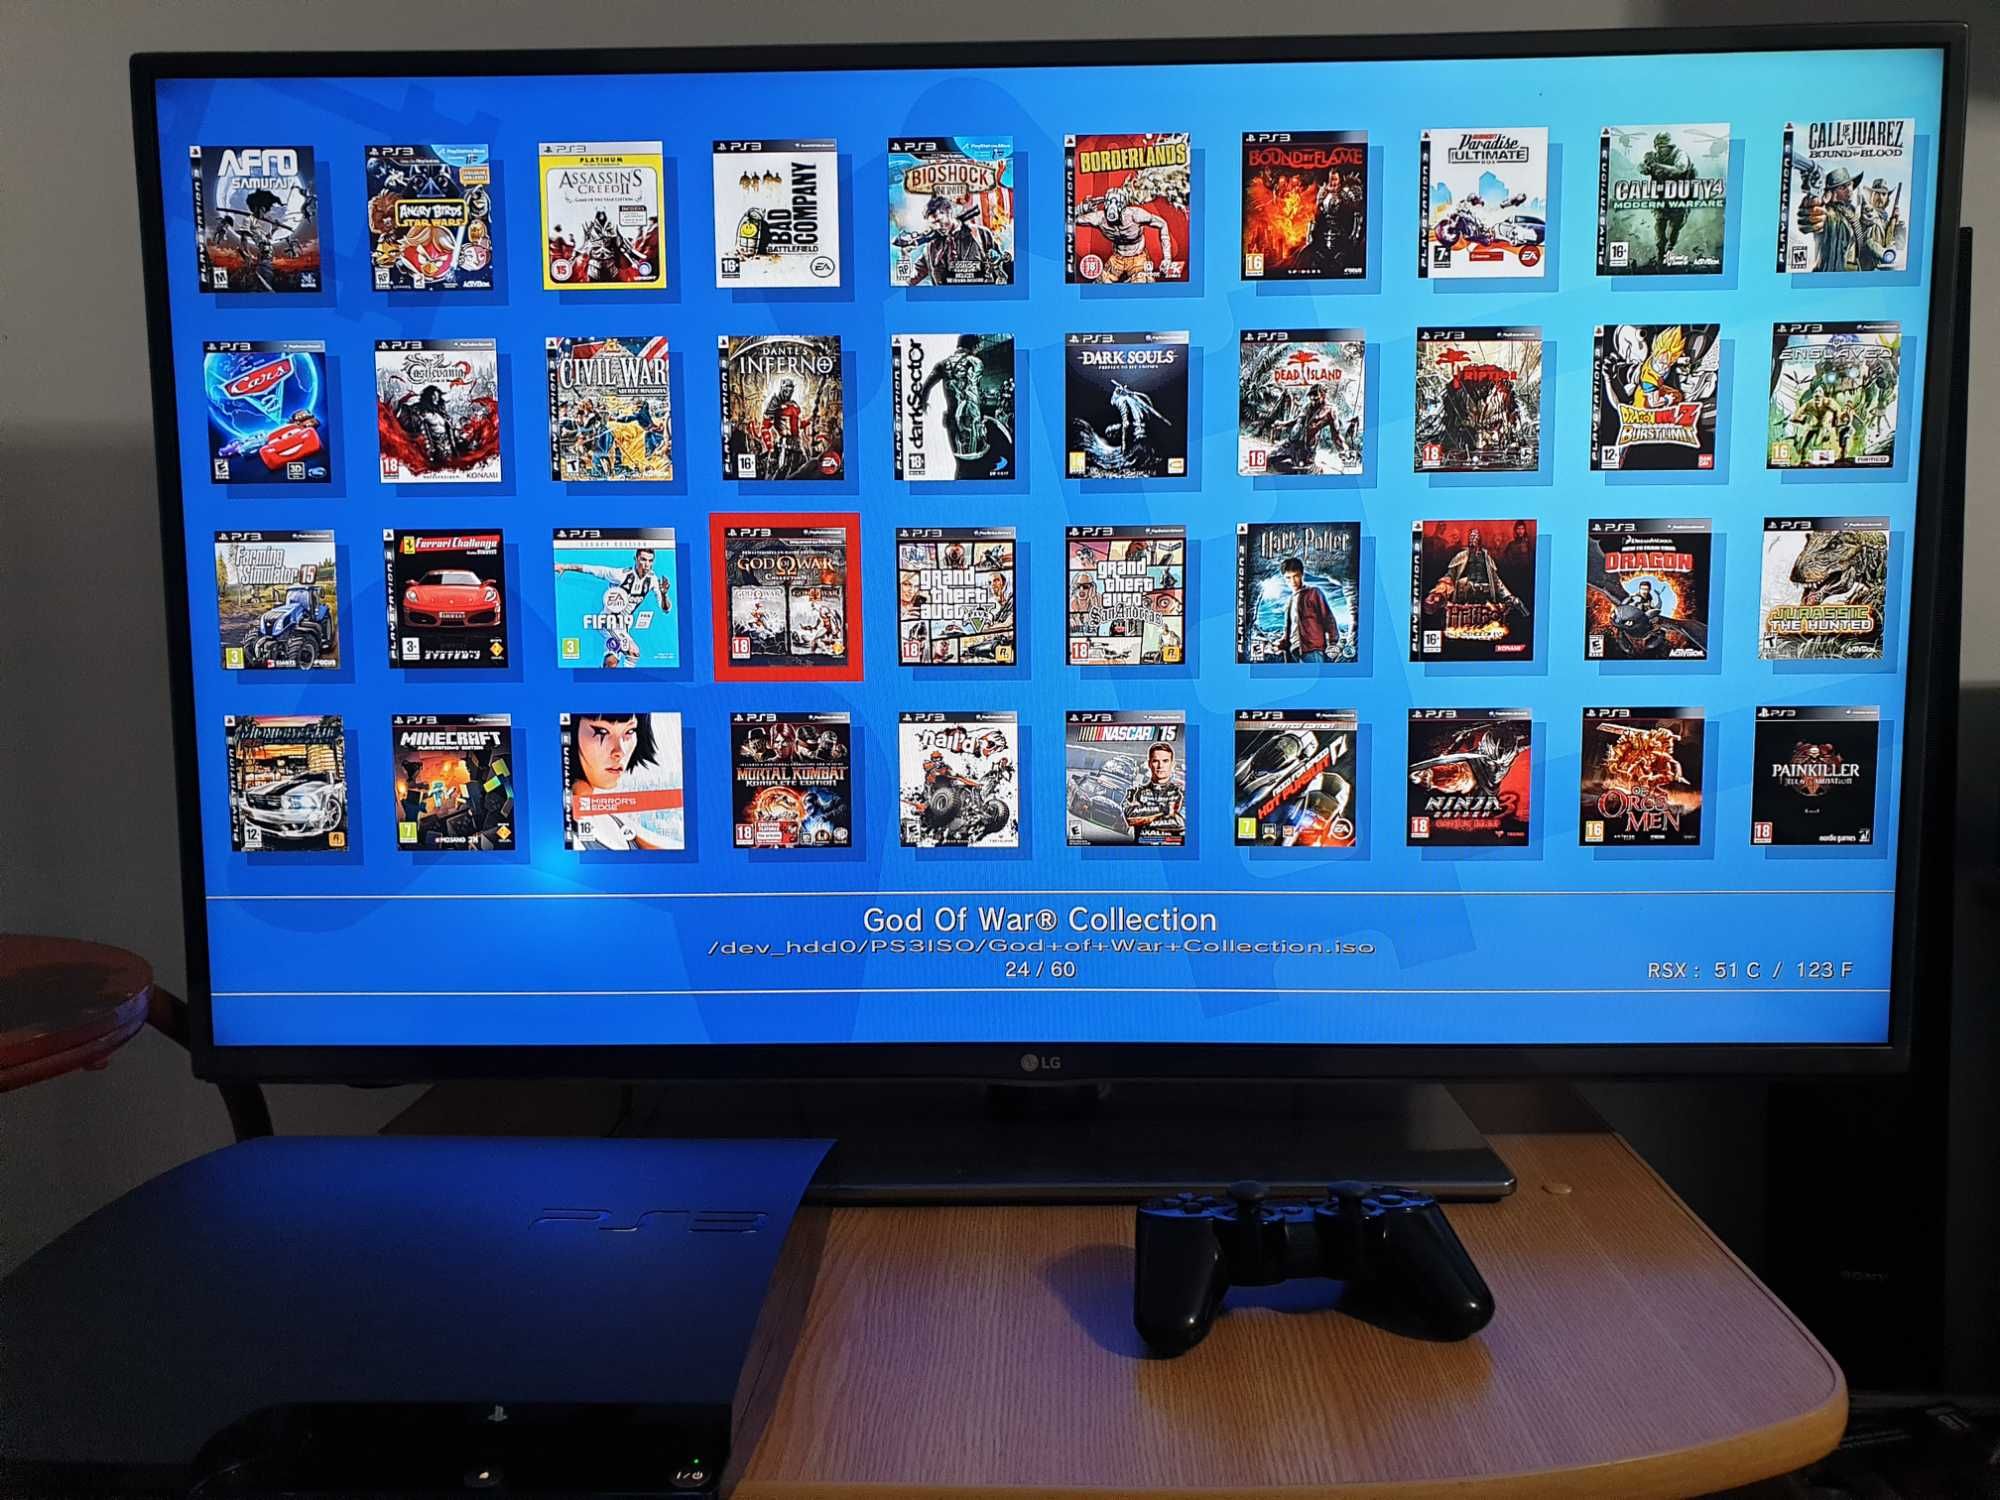 PS3 modat CFW + 60 jocuri instalate (GTA V, God of War, FIFA 19, NFS)